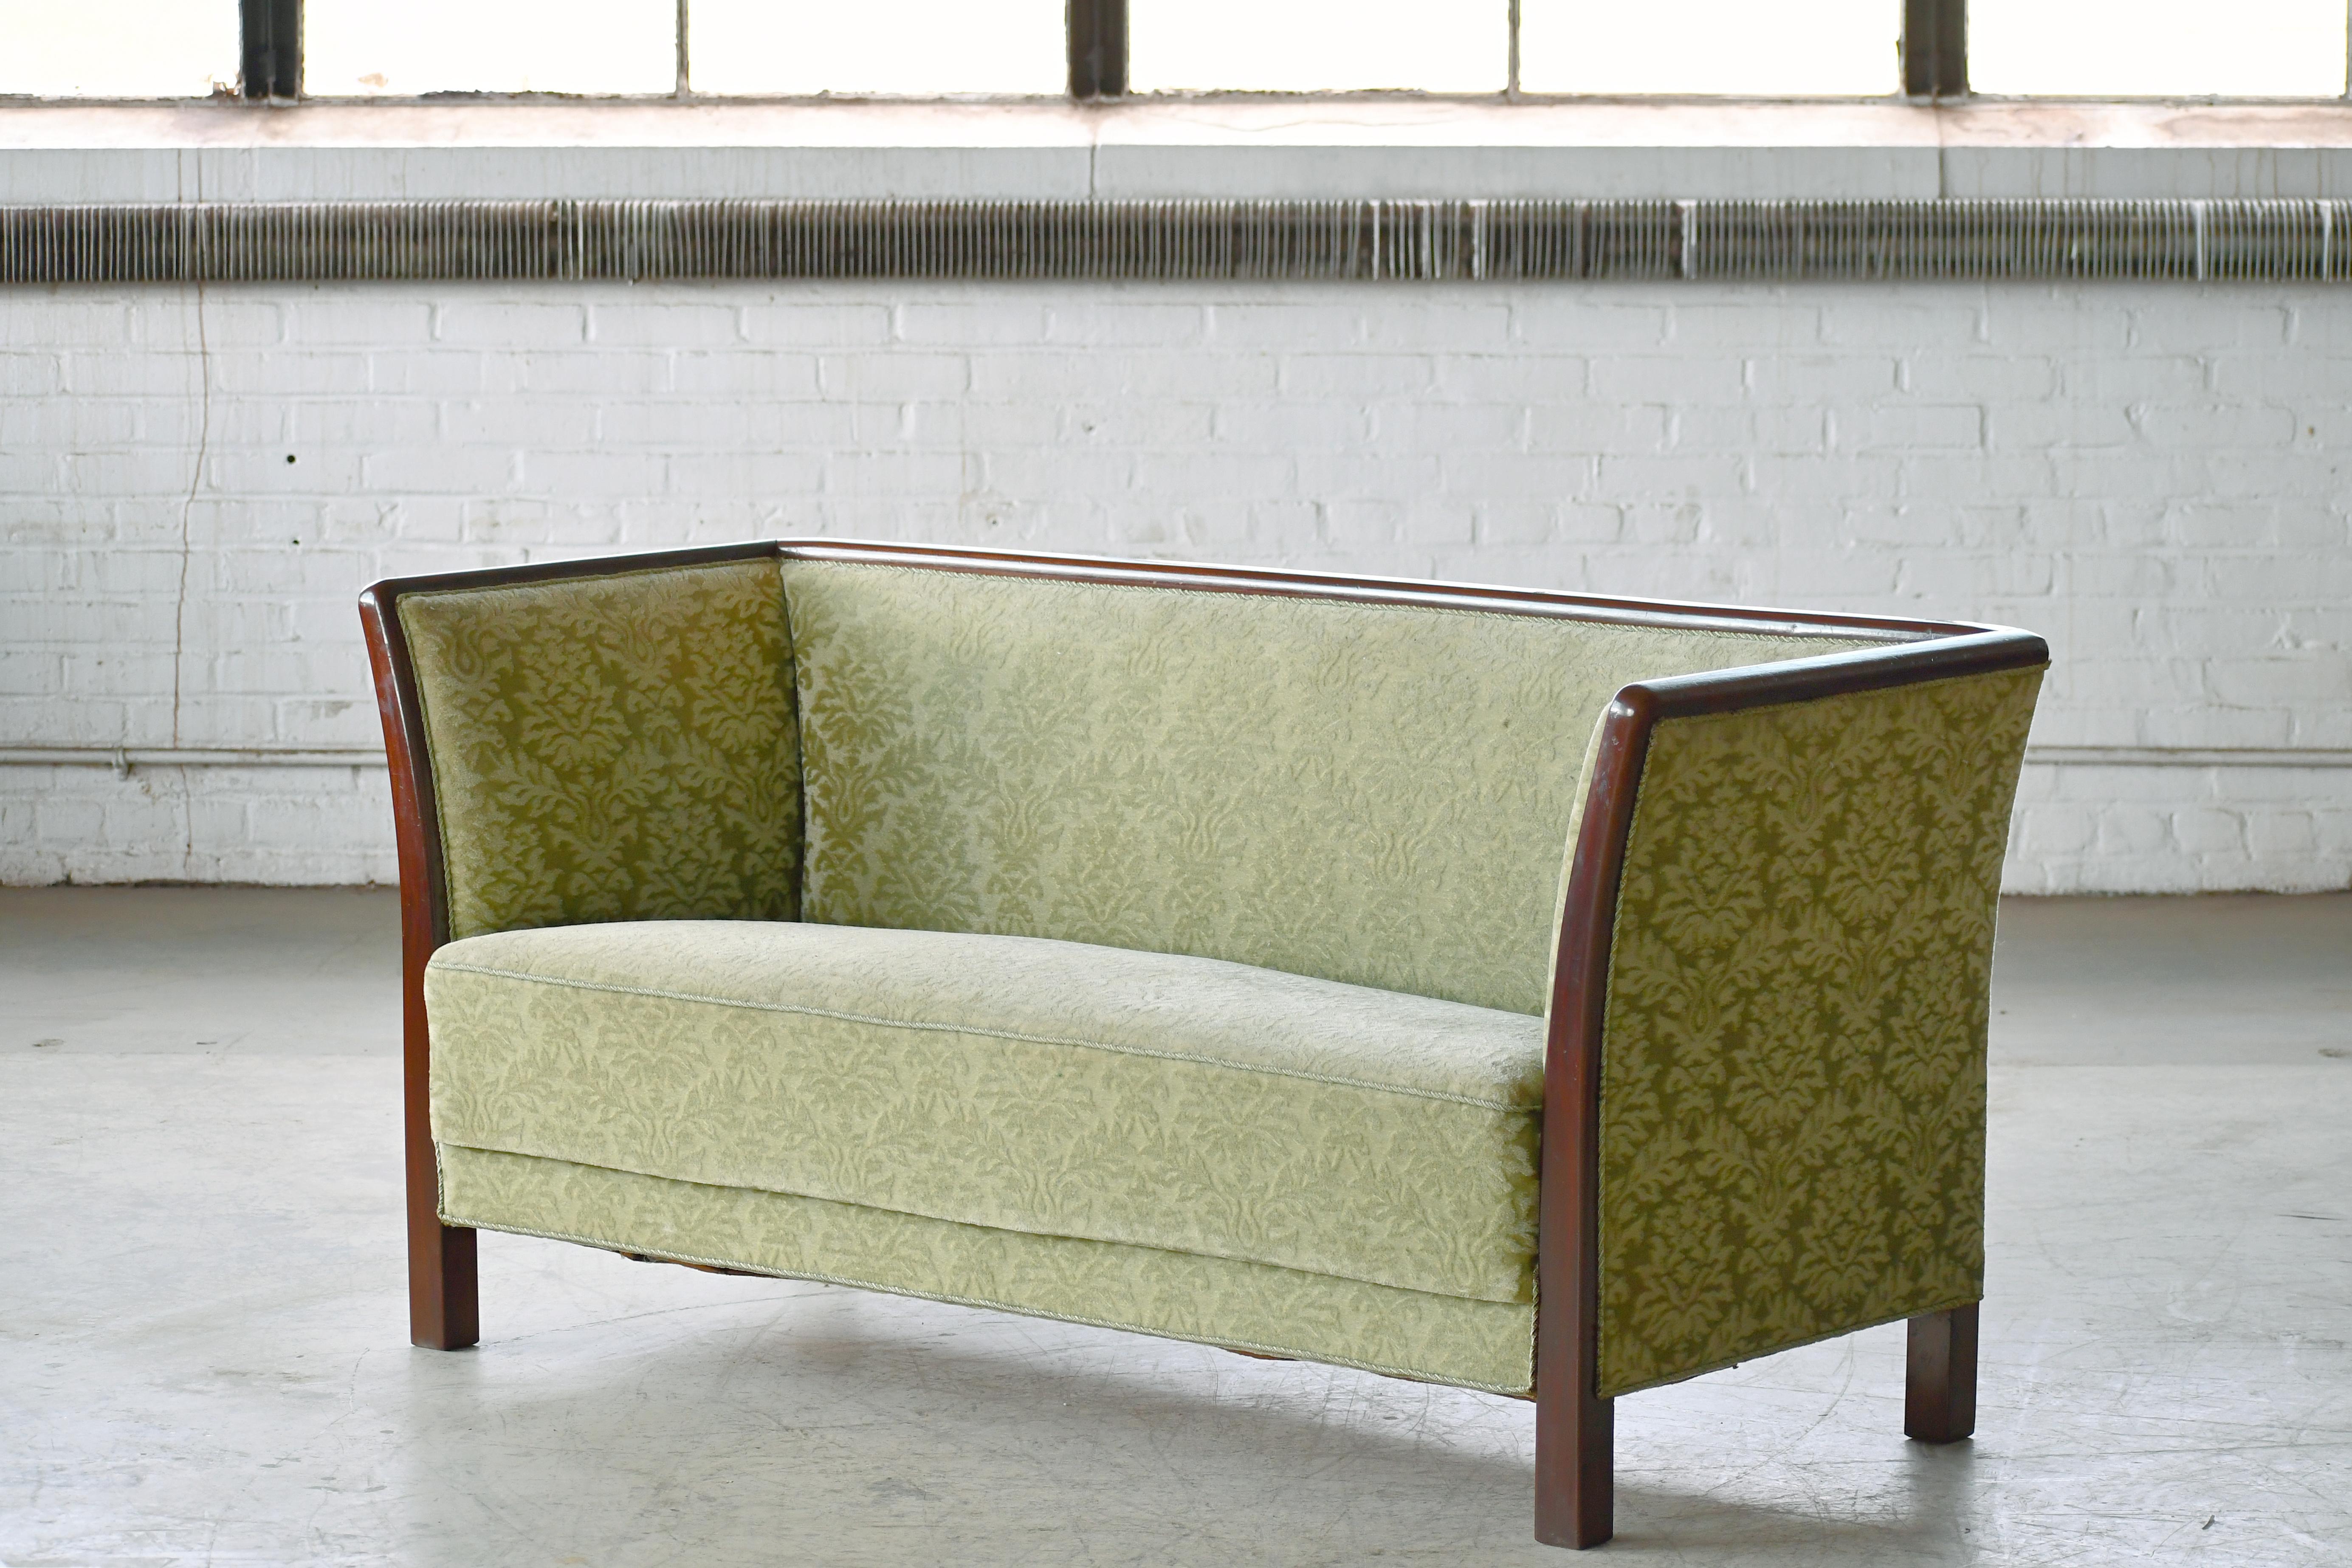 Magnifique et très élégant canapé de style Frits Henningsen fabriqué et marqué d'une étiquette par Søren Willadsen, Danemark, probablement entre les années 1940 et le début des années 1950. Encadré en acajou, le cadre se prolongeant par des pieds